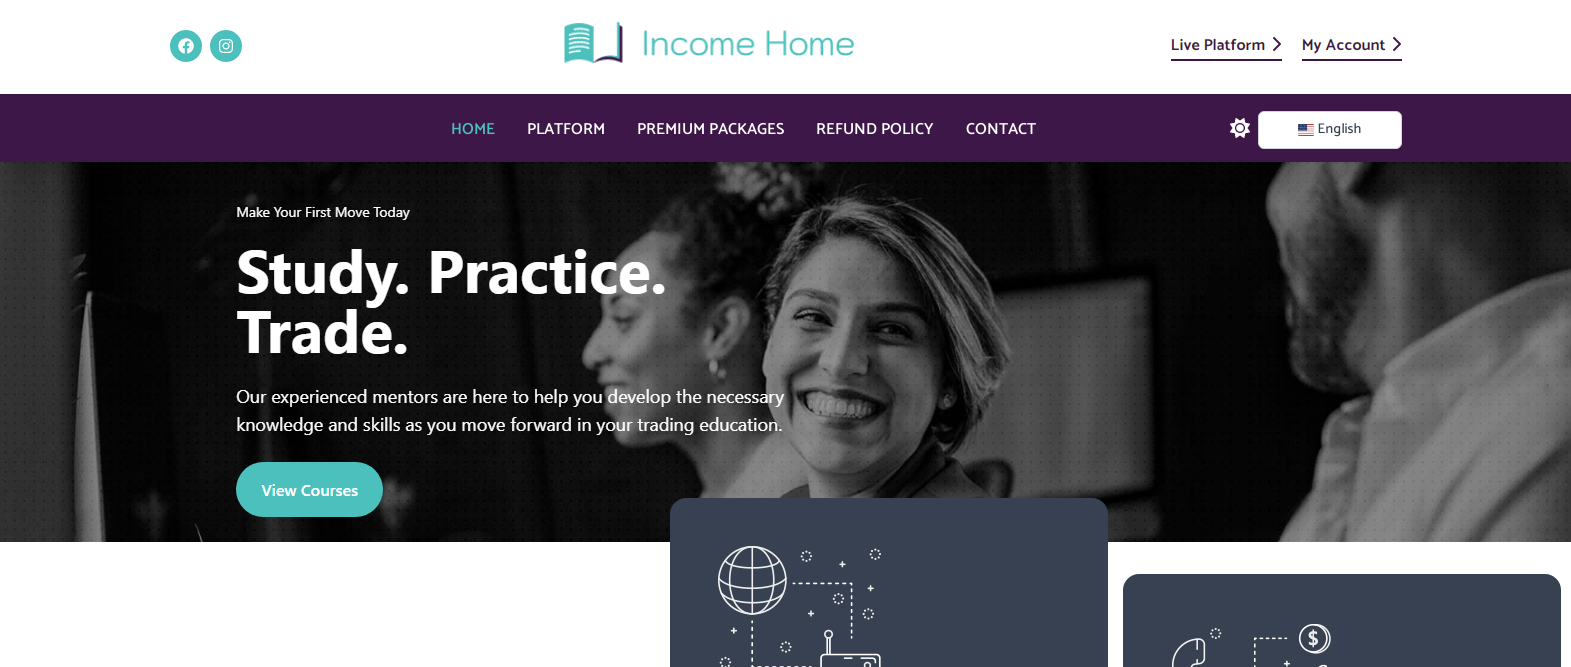 Чем могут быть полезны курсы от Income Home рядовому трейдеру?